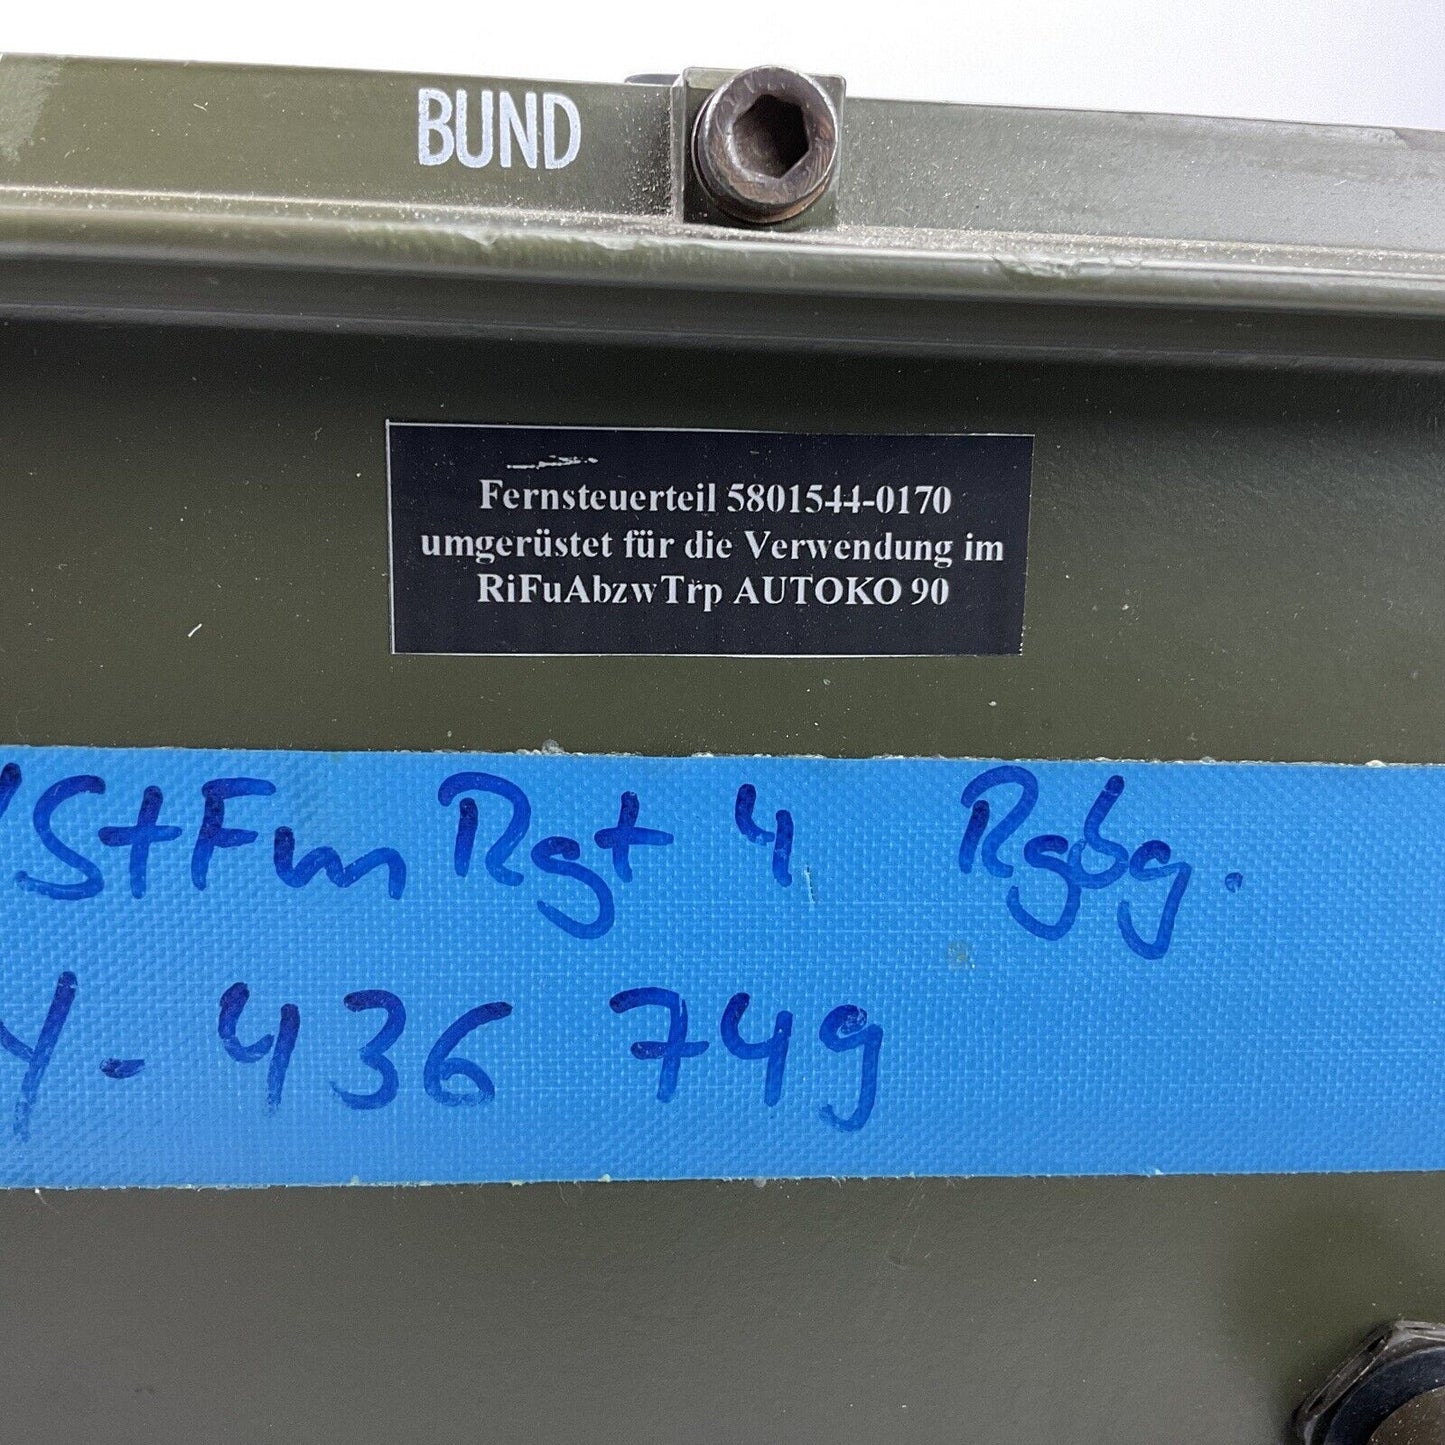 Fernsteuerteil FM 1000 AUTOKO 90 RiFu 5820-12-193-9031 ex. Bundeswehr 0422